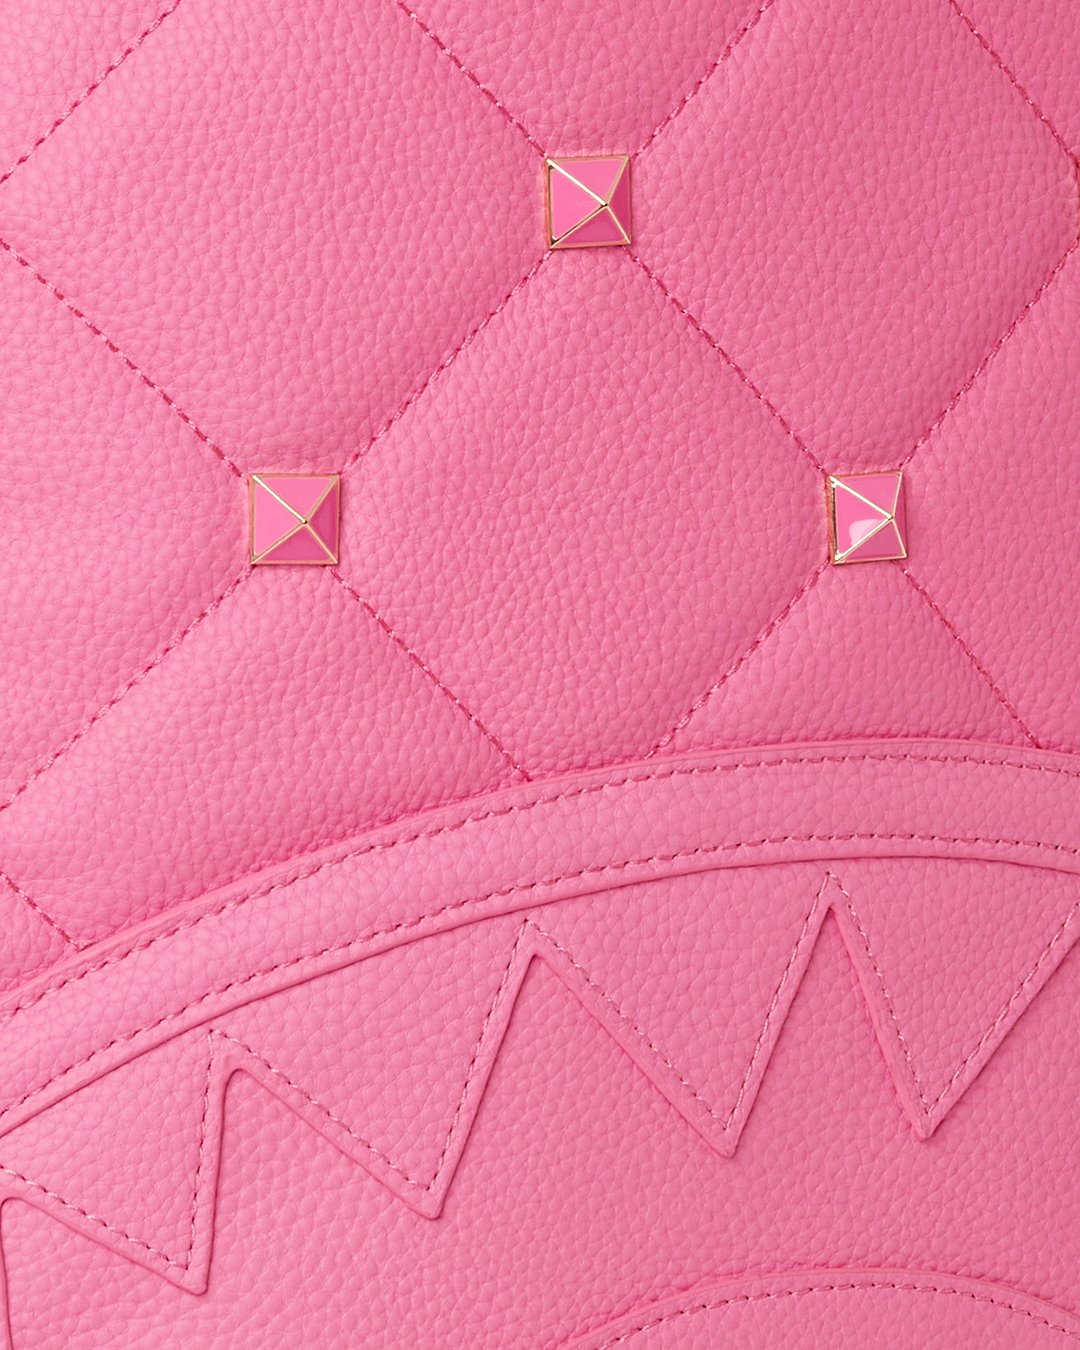 Backpacks Sprayground Pink Puffy Bag Dlxvf Backpack • shop us